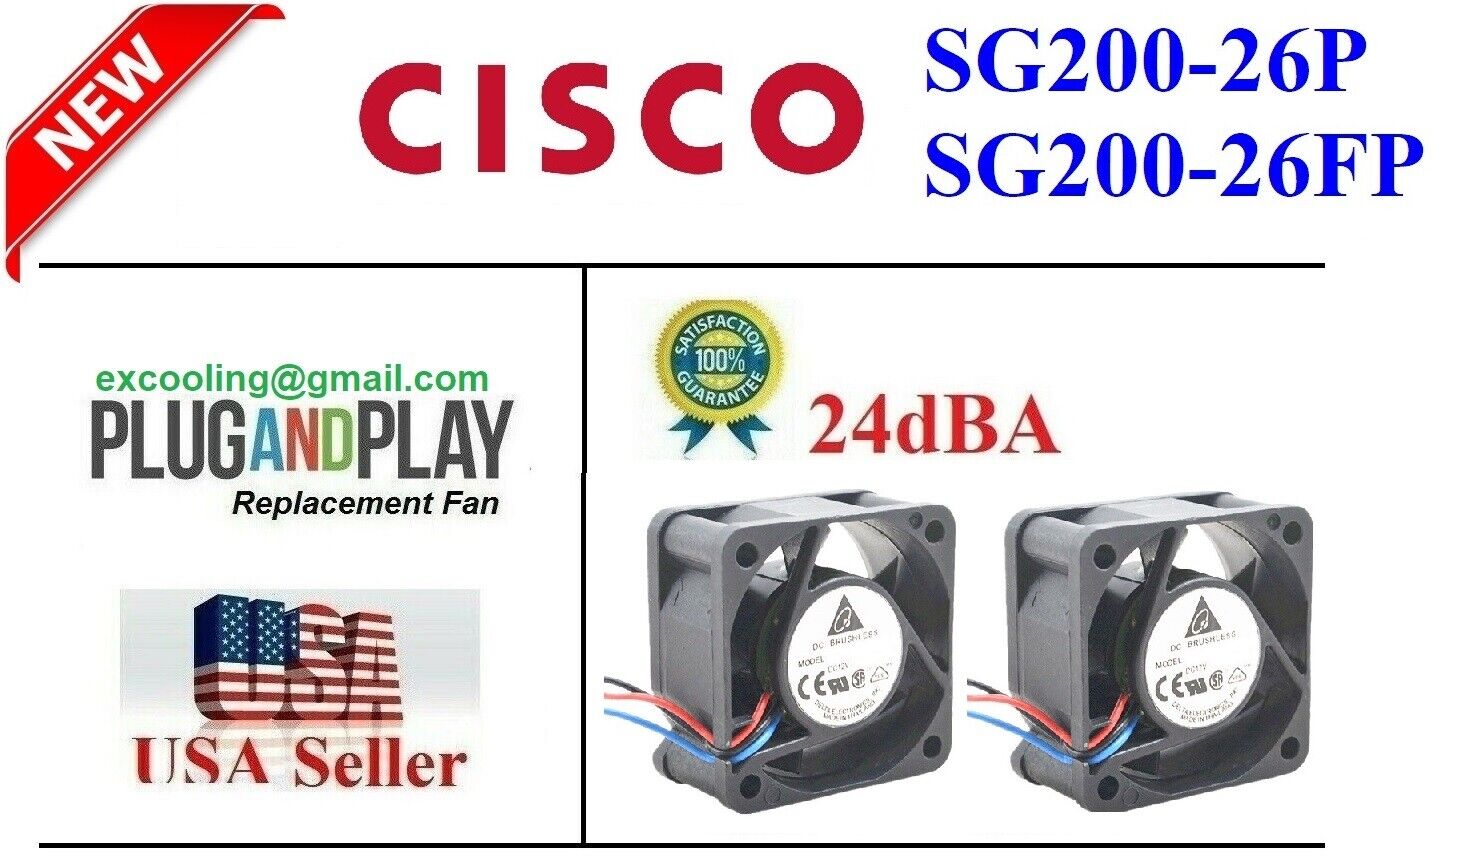 2x Original Delta Genuine Fans for Cisco SG200-26FP